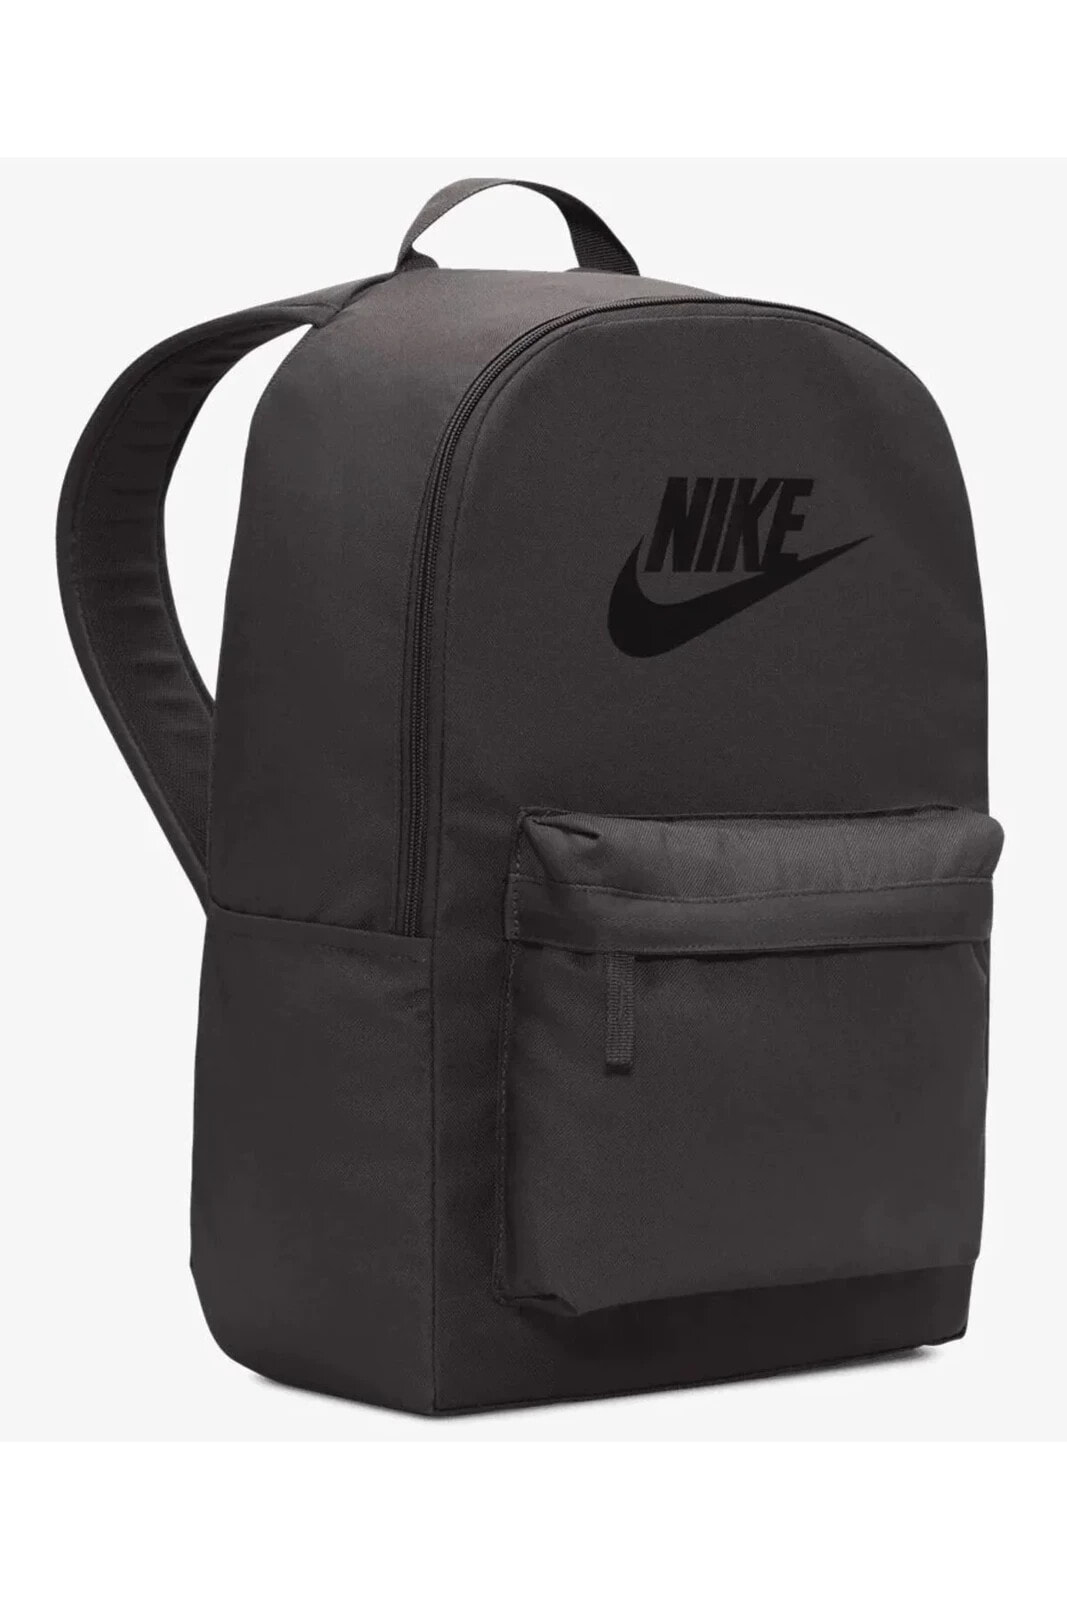 Sırt Çantası Nike Çanta Gri Laptop Gözlü 4244Gri